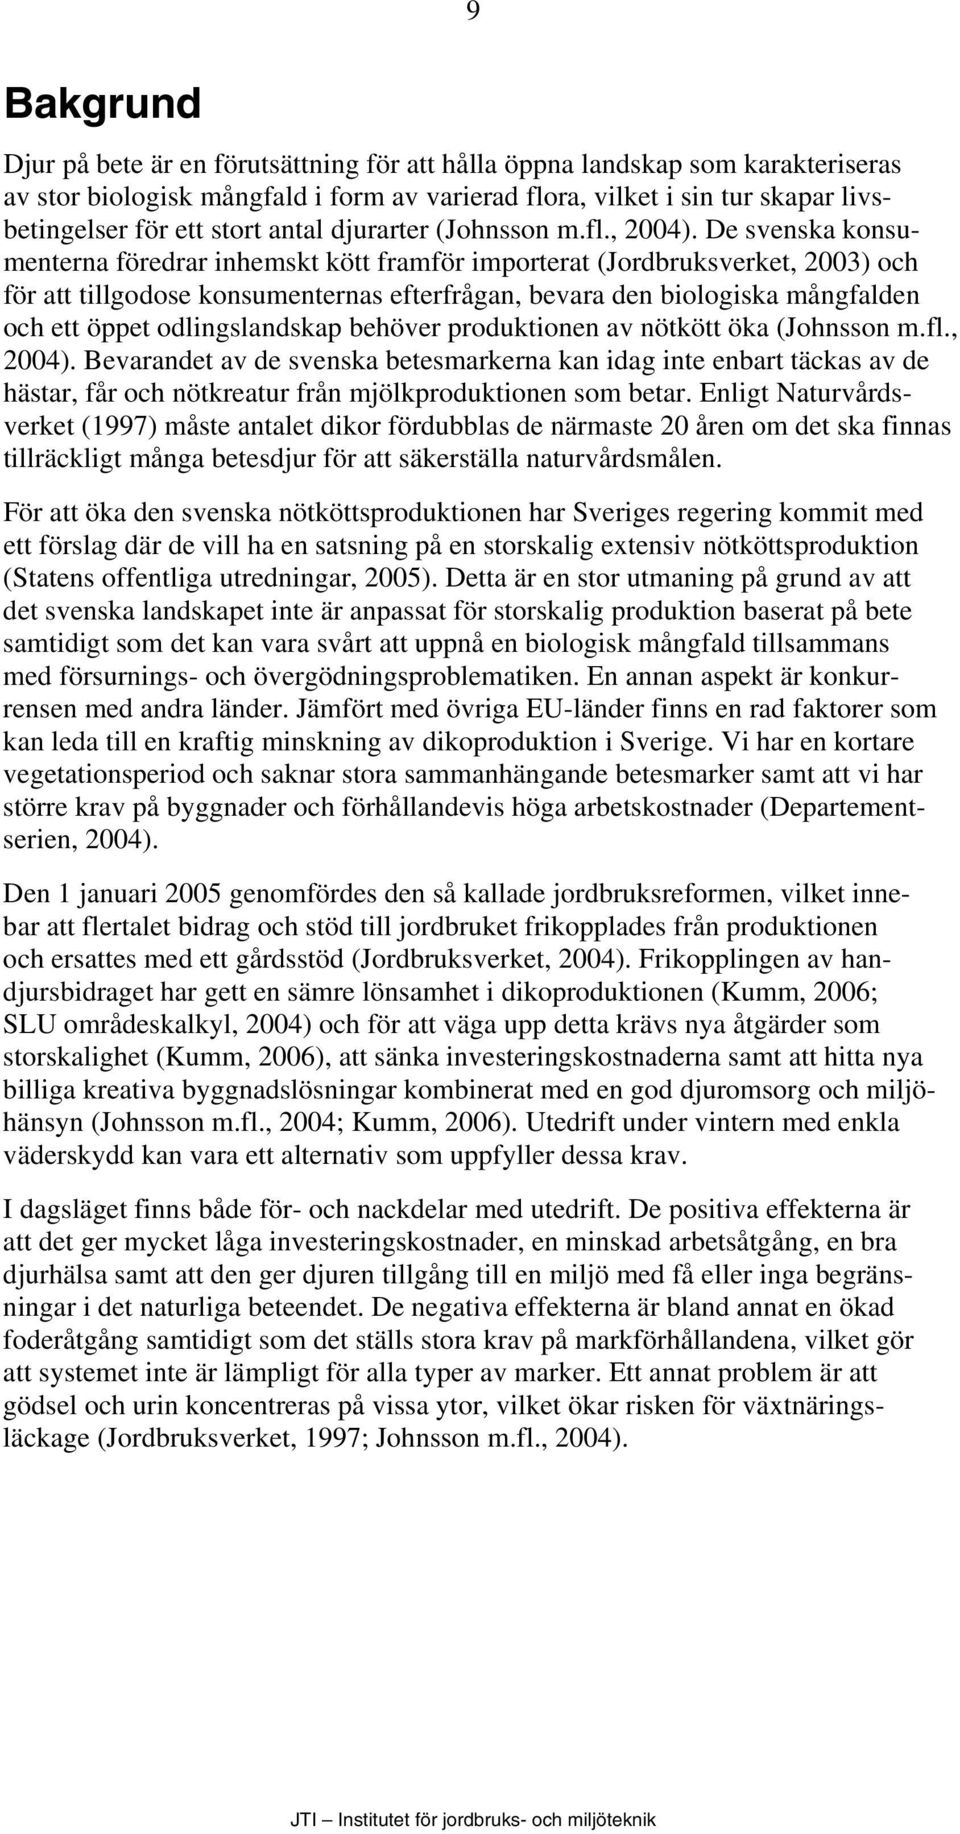 De svenska konsumenterna föredrar inhemskt kött framför importerat (Jordbruksverket, 2003) och för att tillgodose konsumenternas efterfrågan, bevara den biologiska mångfalden och ett öppet